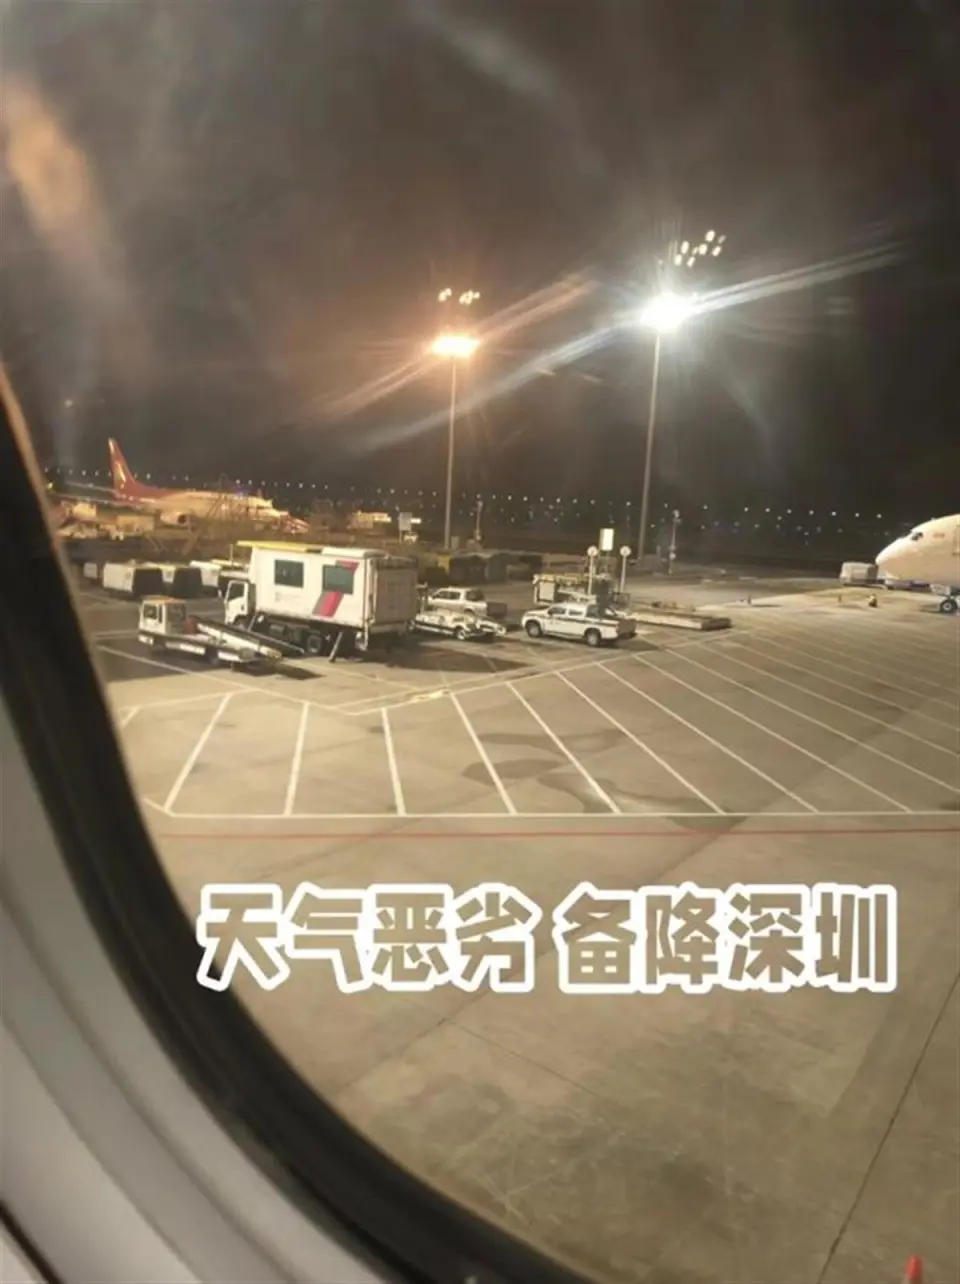 上海飛香港一航班兩次降落失敗不少乘客嘔吐了